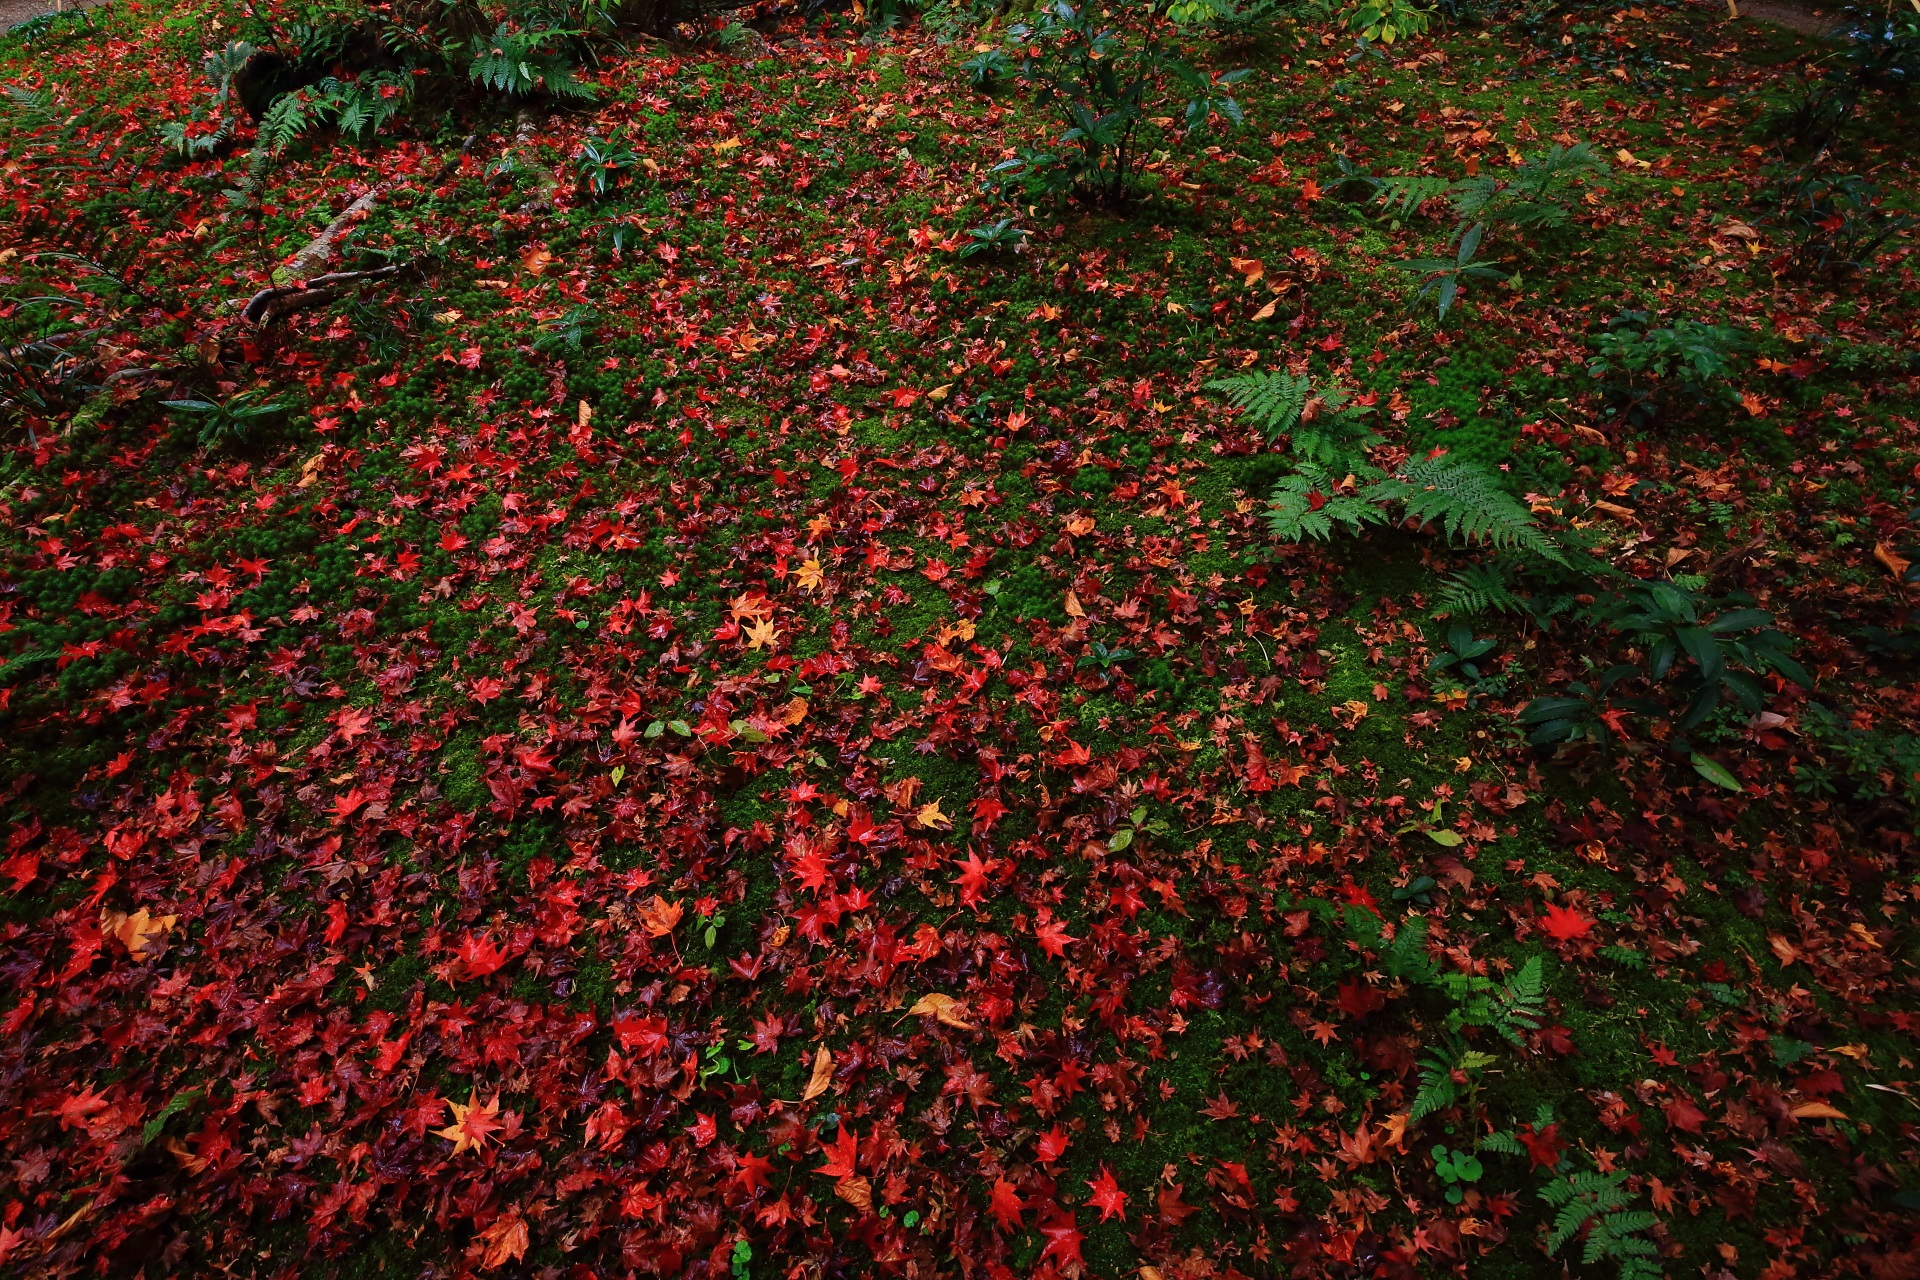 雨で潤い美しさを増した鮮やかな散り紅葉